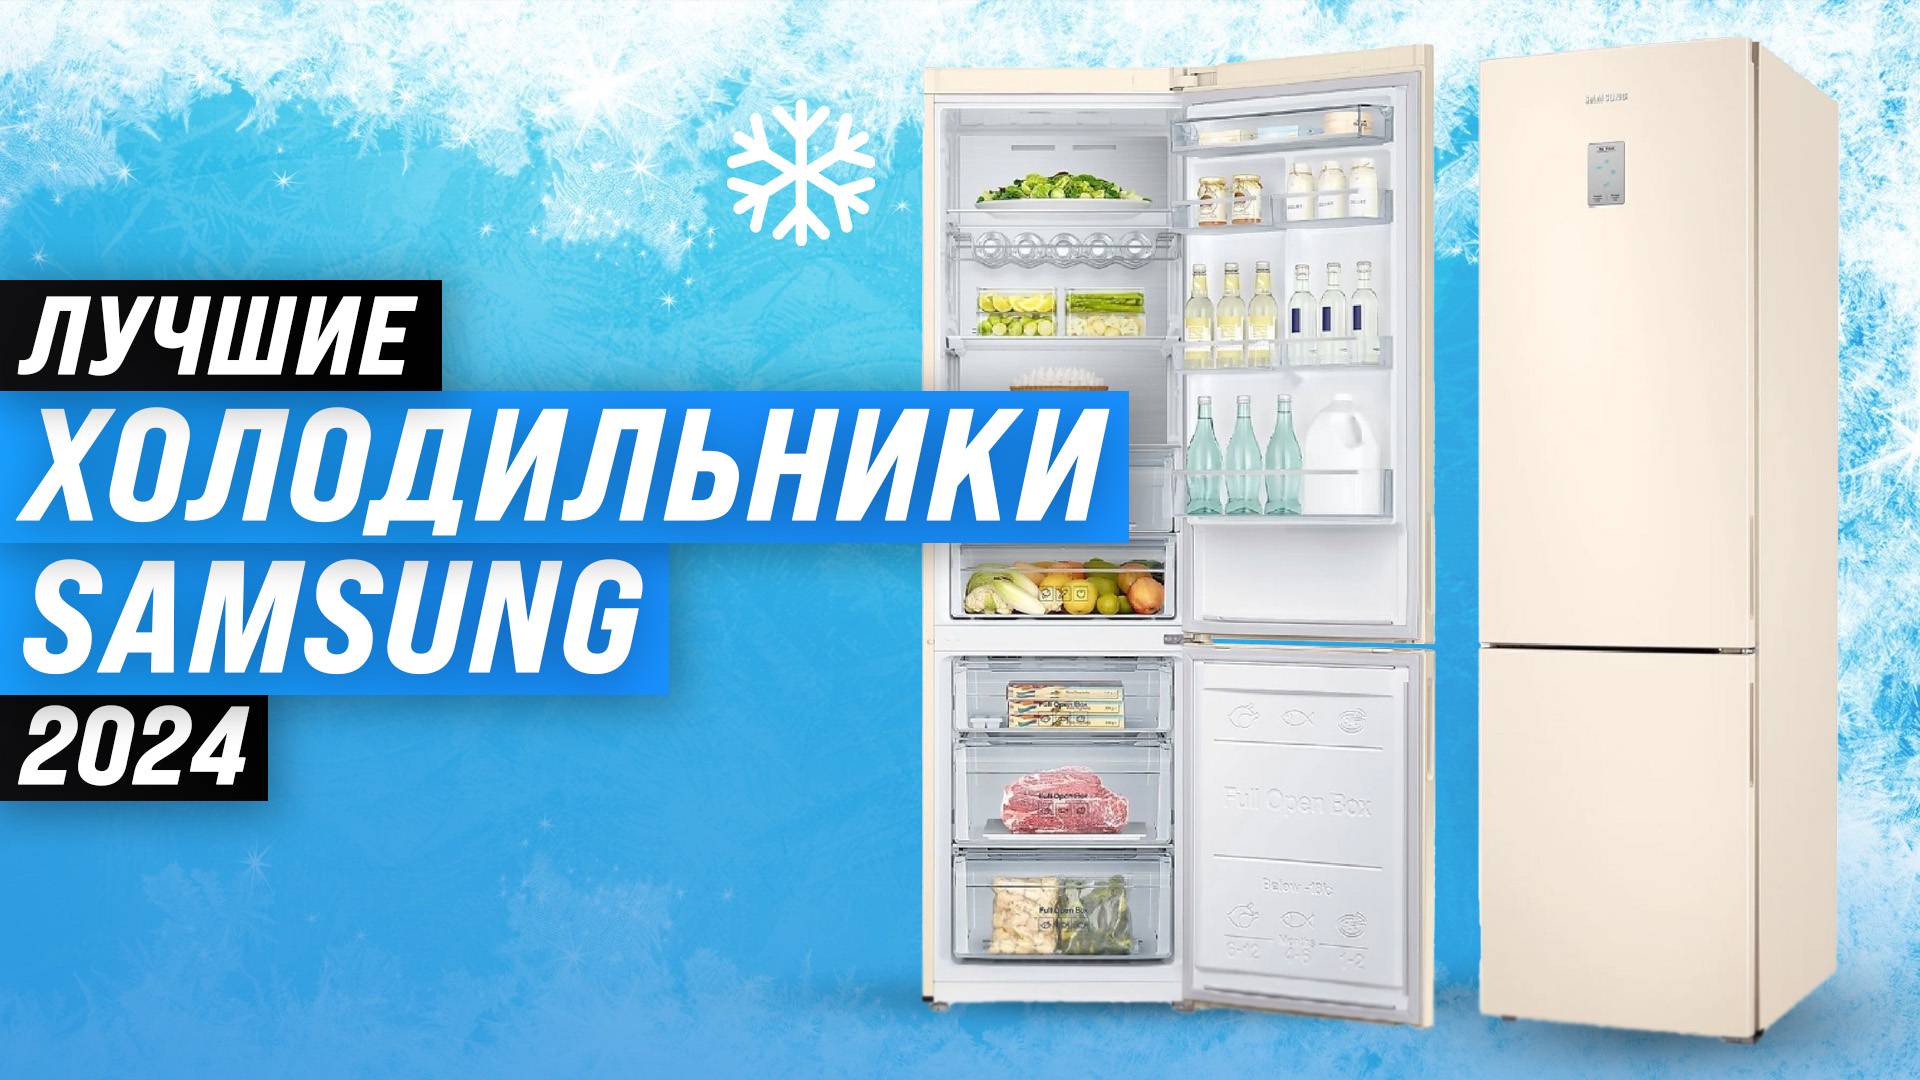 ТОП–5 лучших холодильников Samsung 2024 года: Какой выбрать для современной кухни?